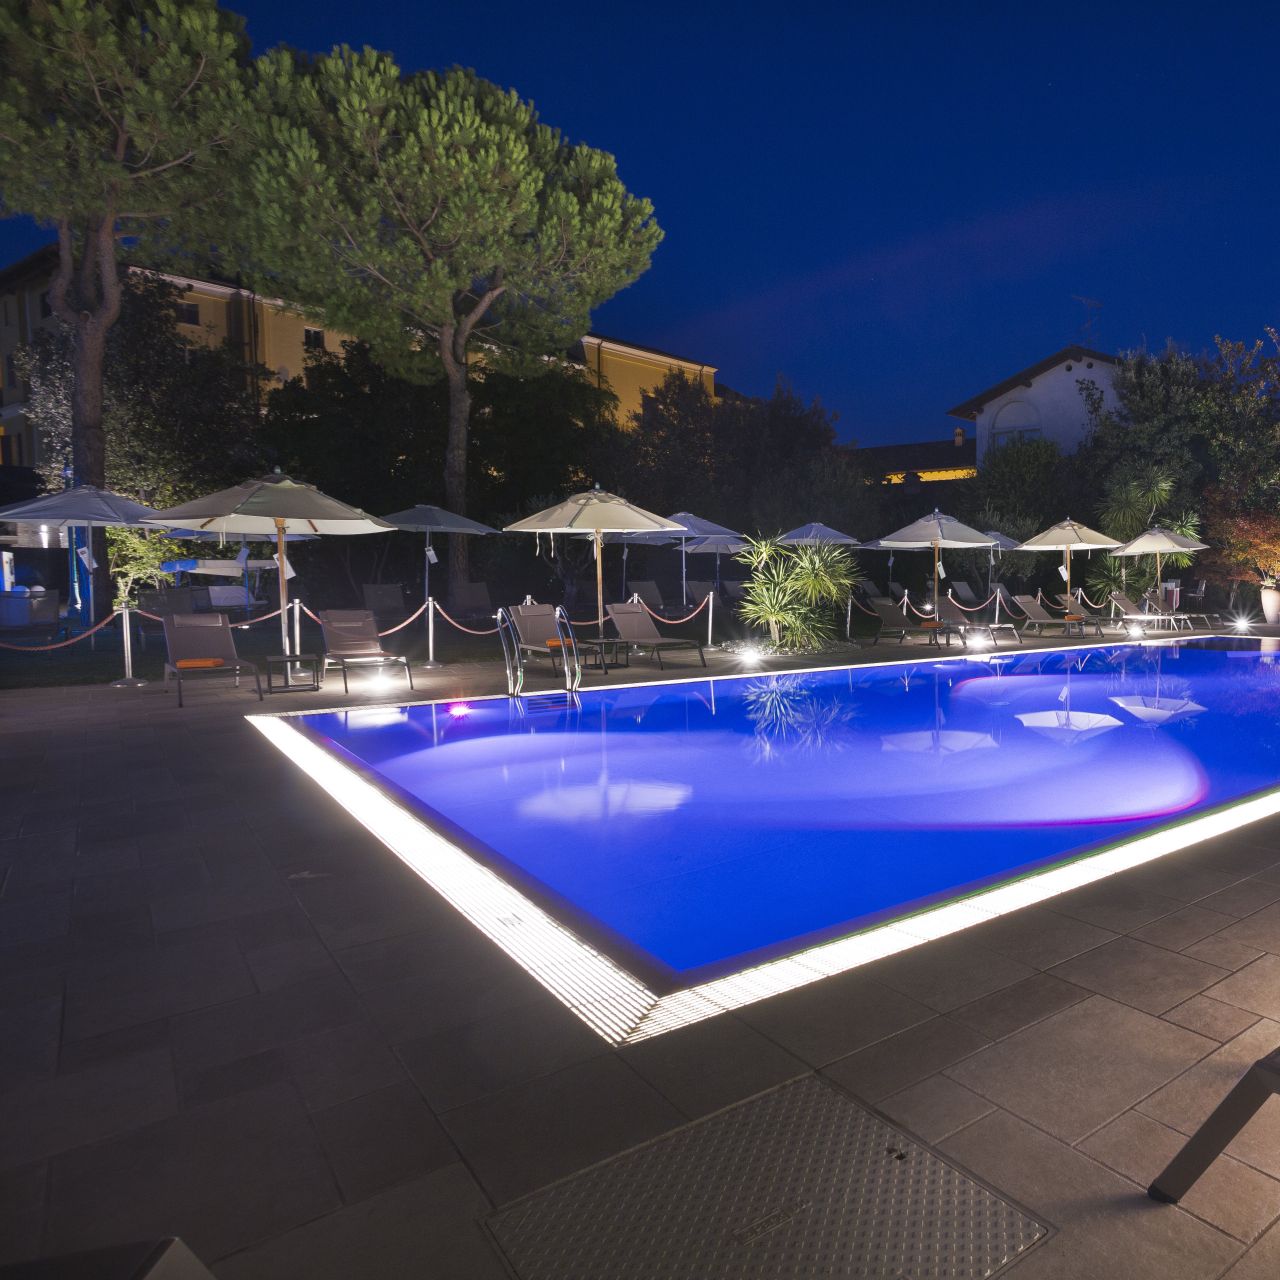 Vips Motel - Lonato del Garda chez HRS avec services gratuits